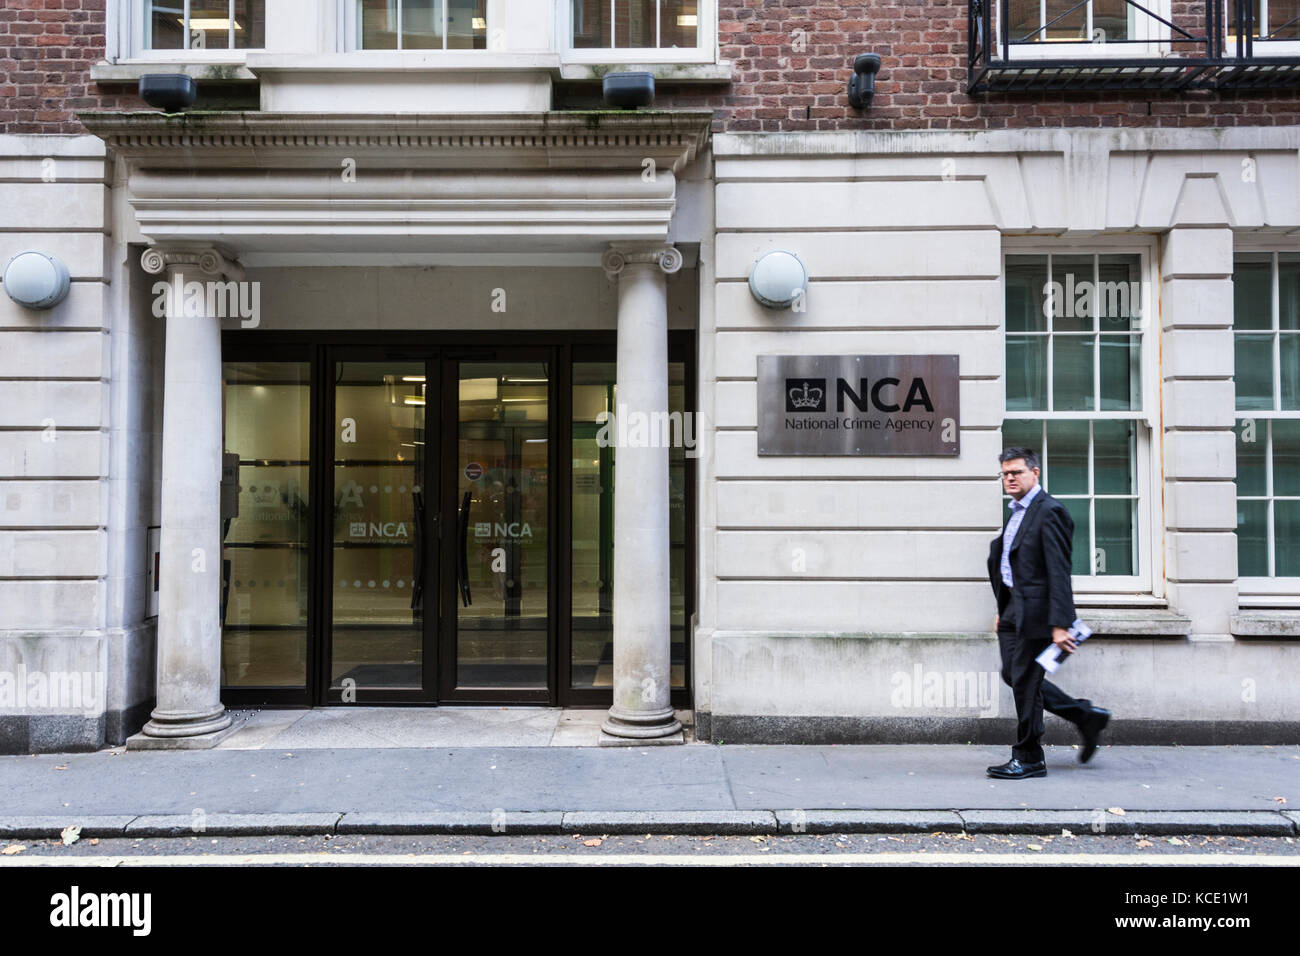 L'entrée de l'Agence nationale de lutte contre la criminalité sur Old Queen St, Westminster, Londres, SW1. UK Banque D'Images